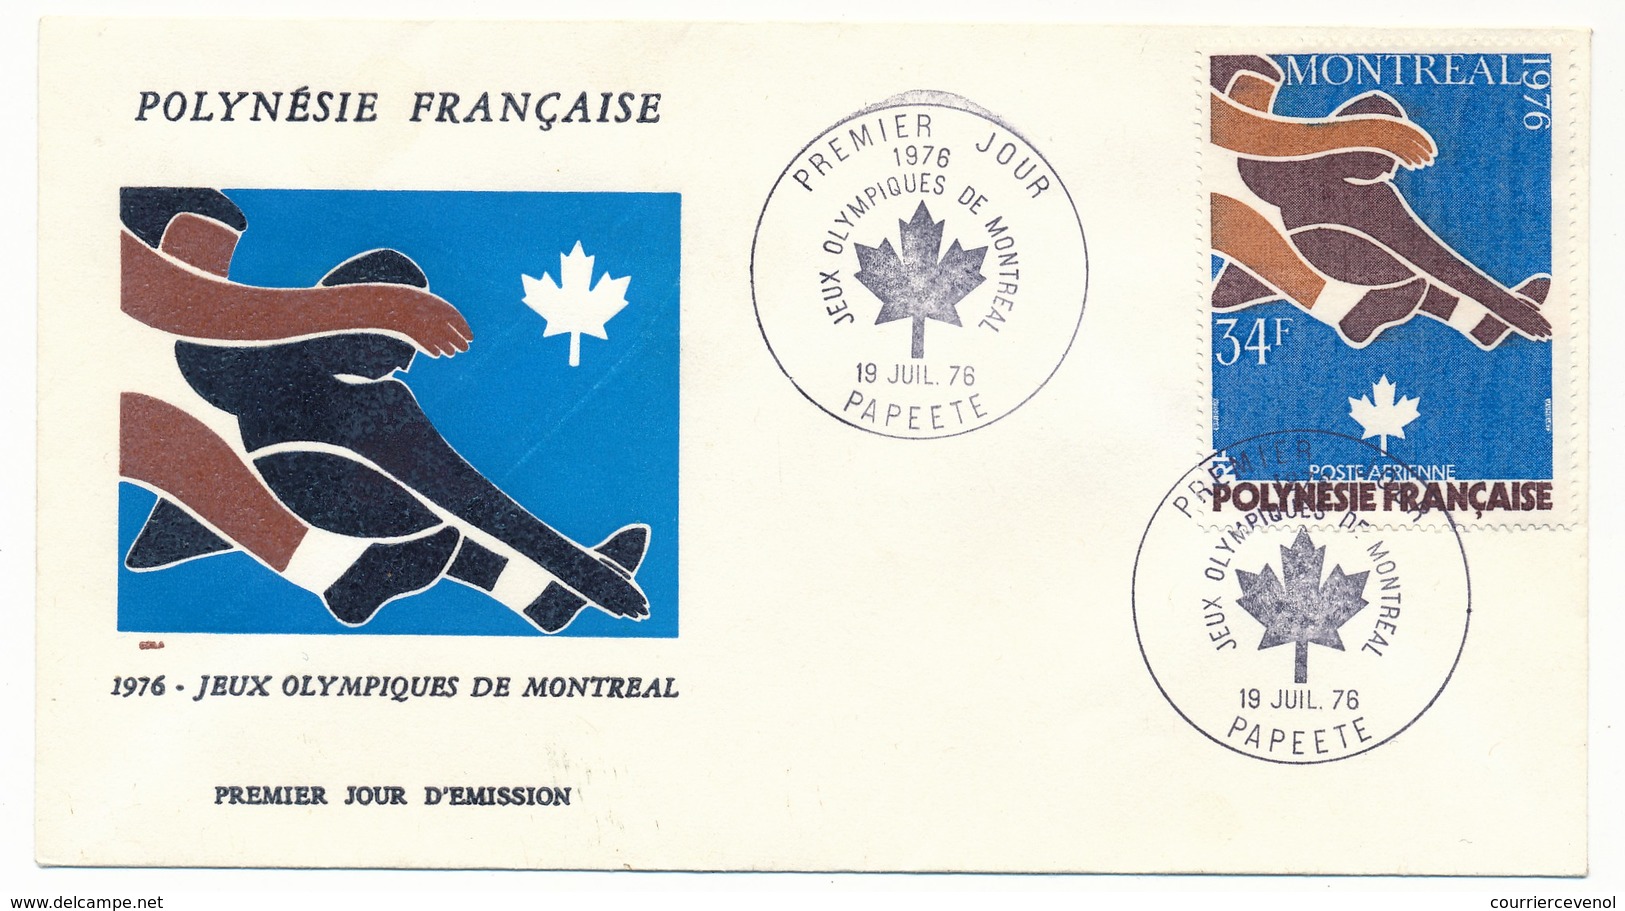 POLYNESIE FRANCAISE - 3 FDC - Jeux Olympiques De Montréal - 1976 - FDC